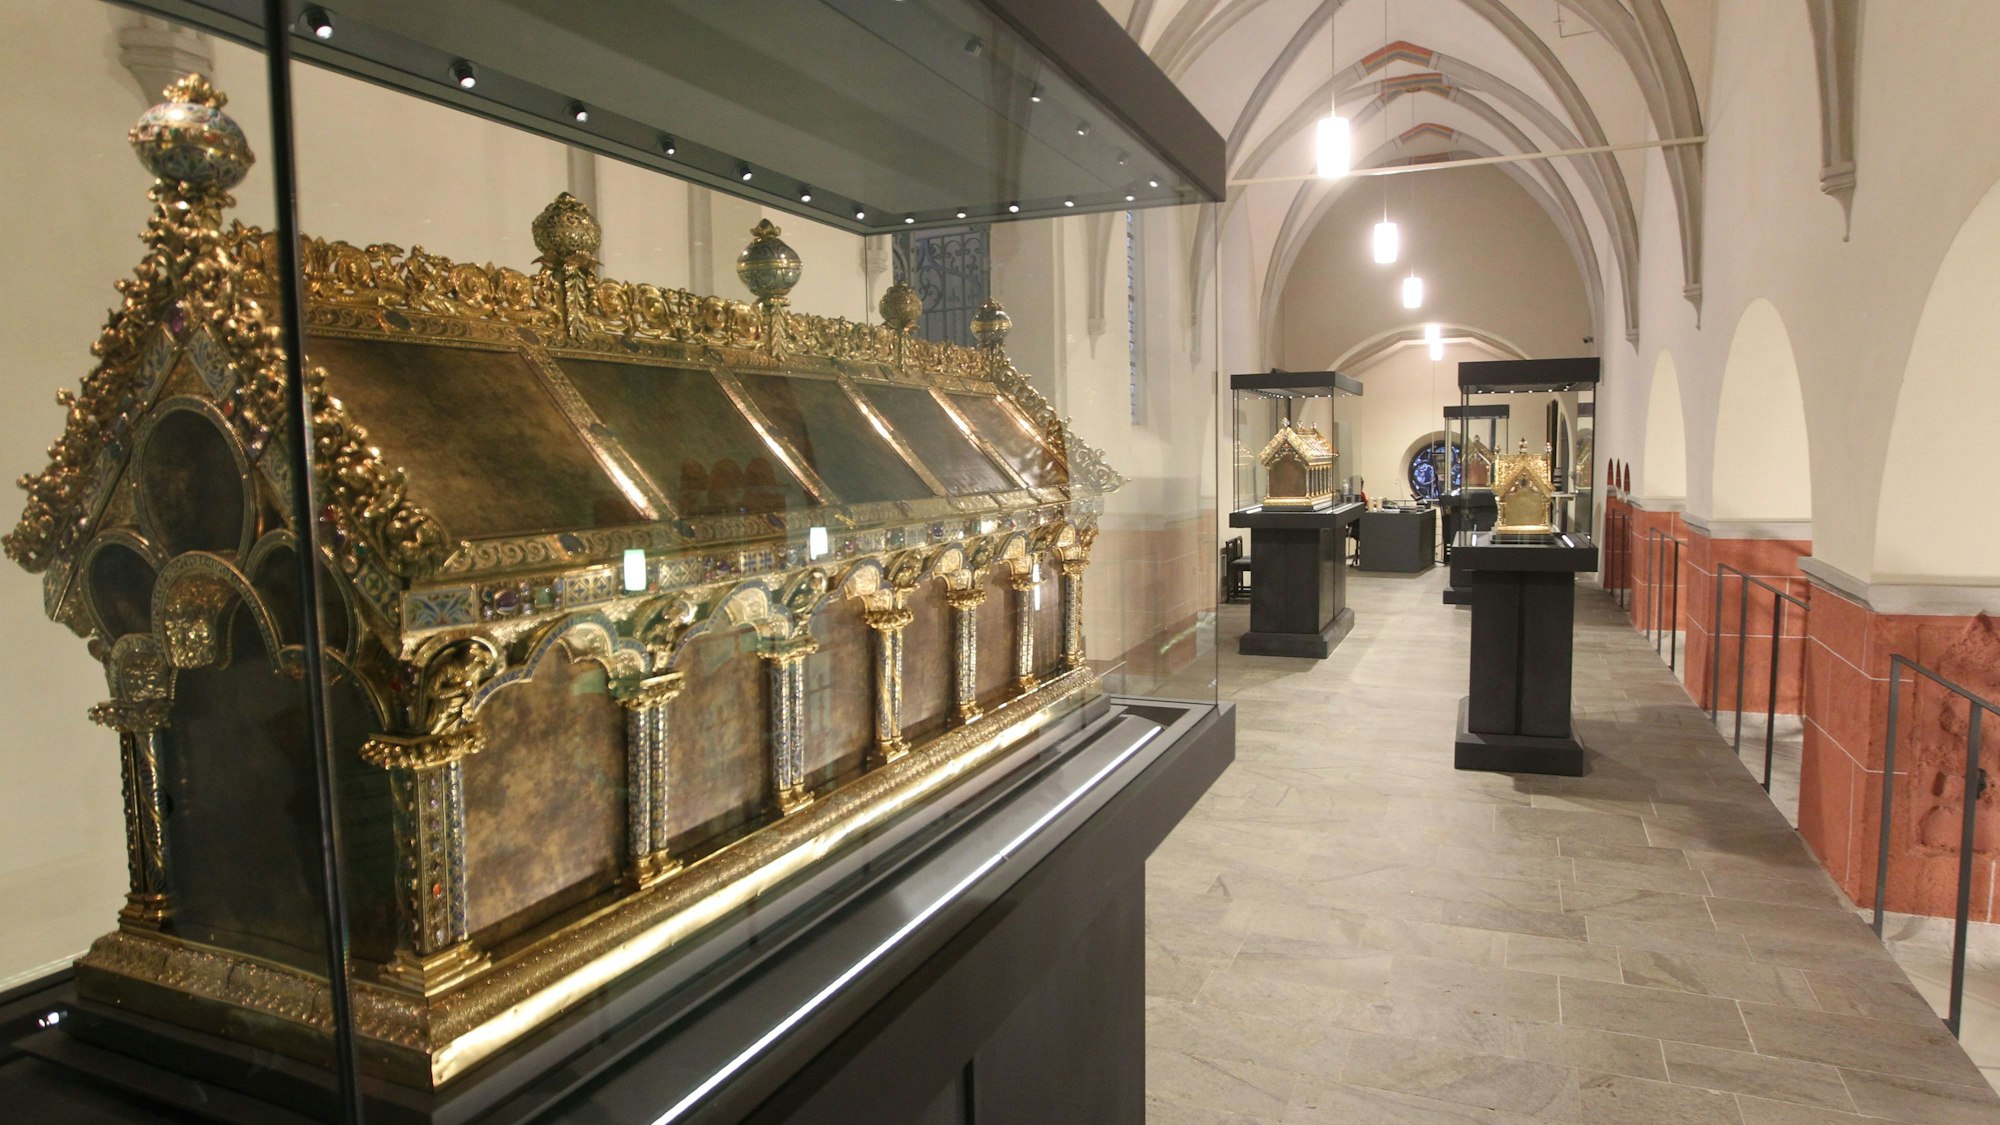 Ein reich verzierter goldener Schrein steht in einer Vitrine, weiter hinten im Kirchenraum sind zwei weitere Vitrinen mit goldenen Schreinen.